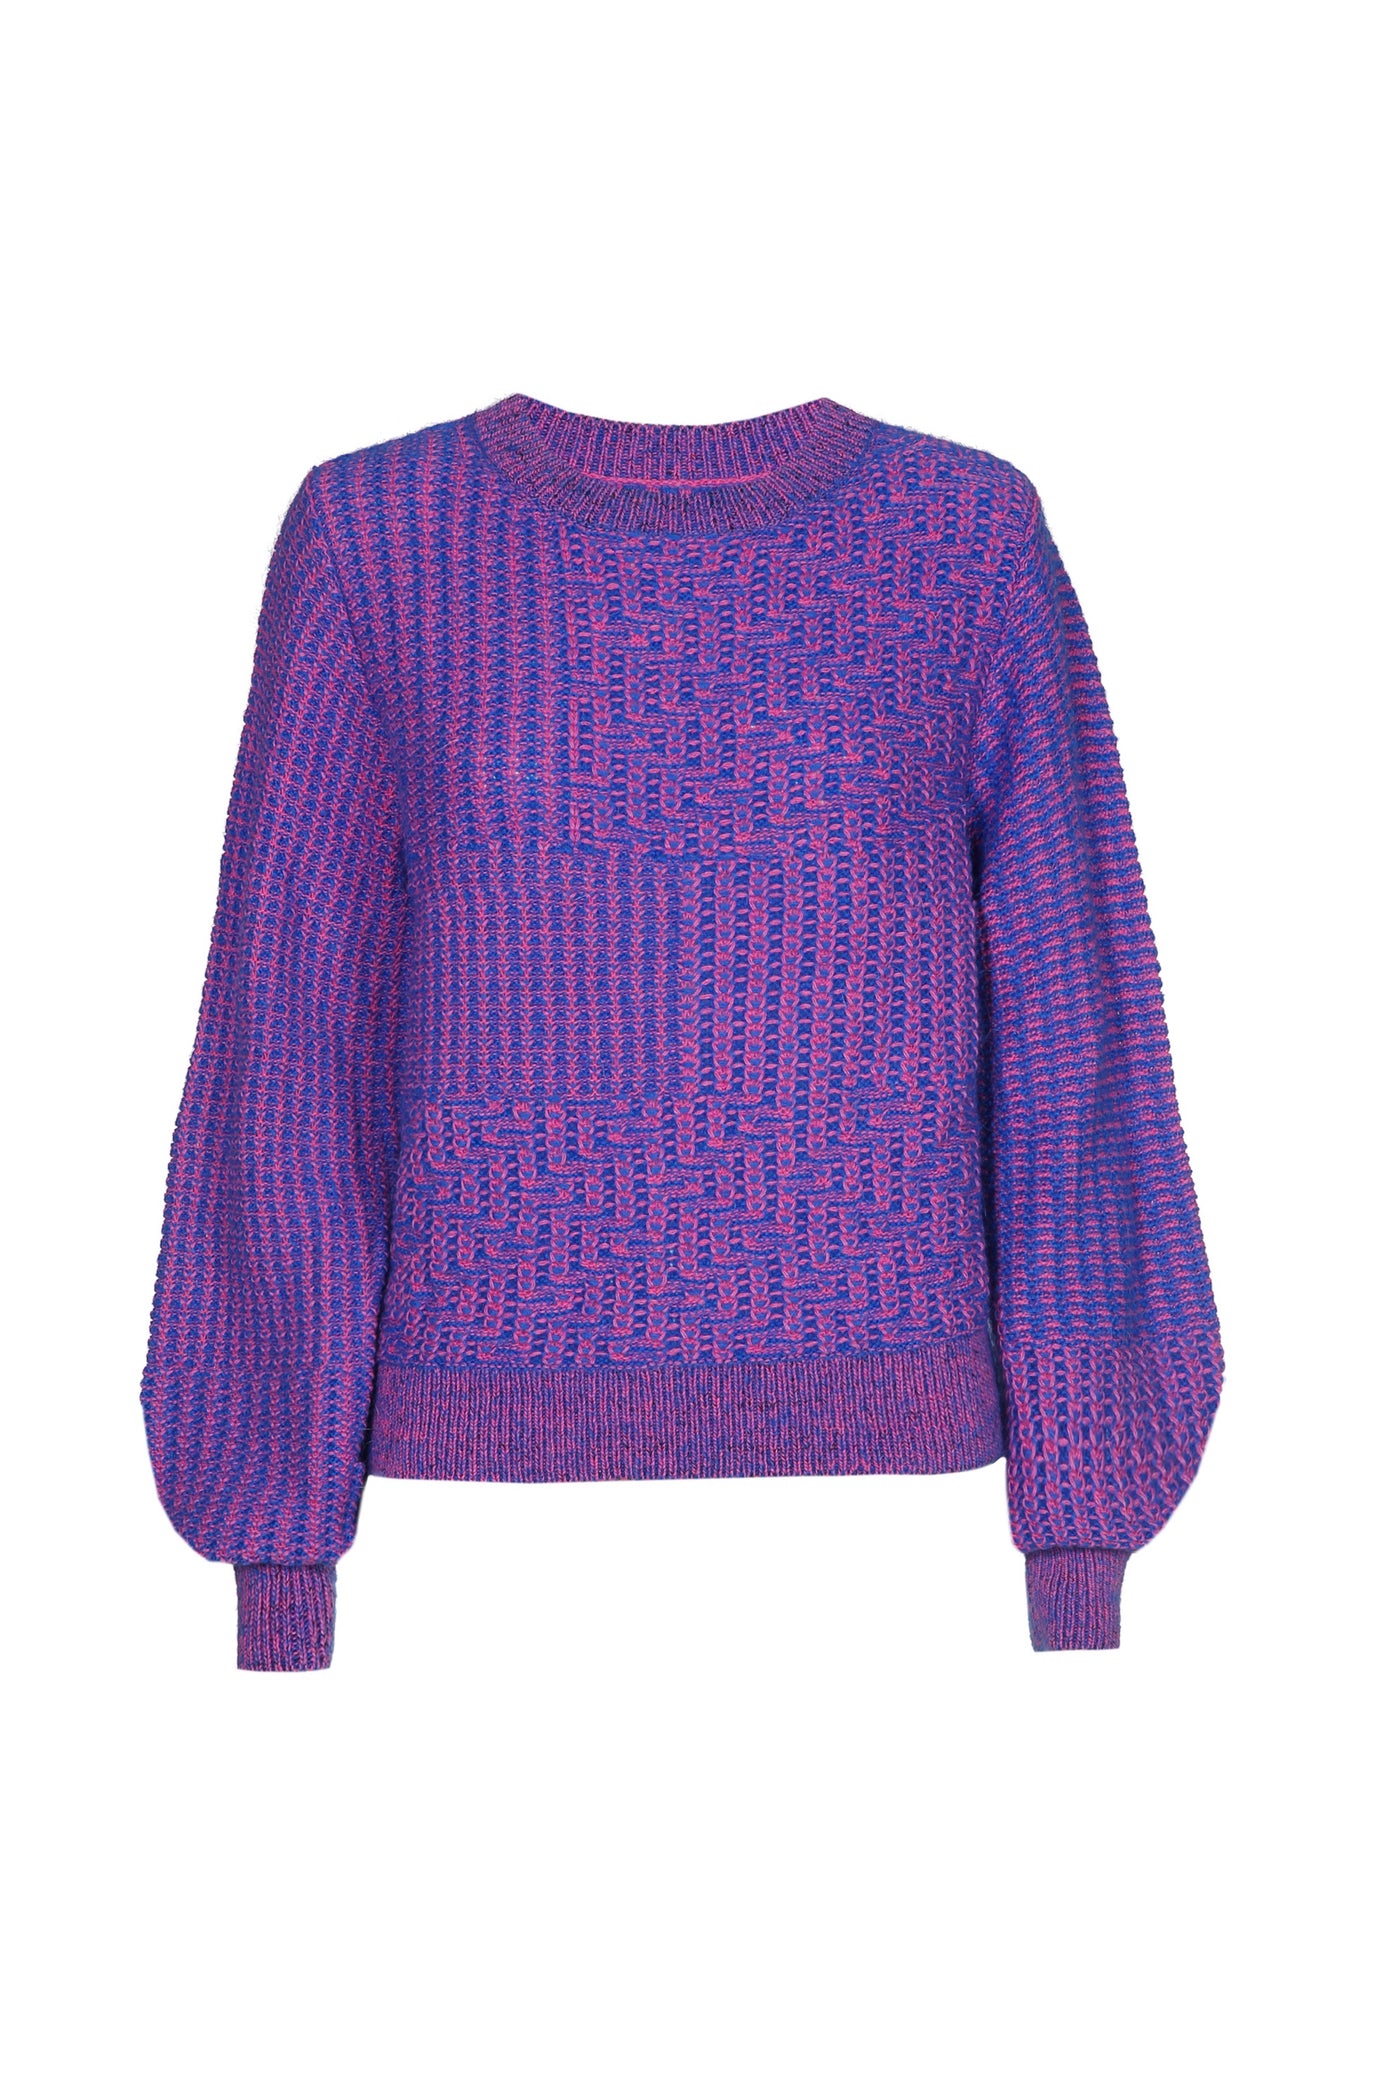 Bliss Sweater Cobalt